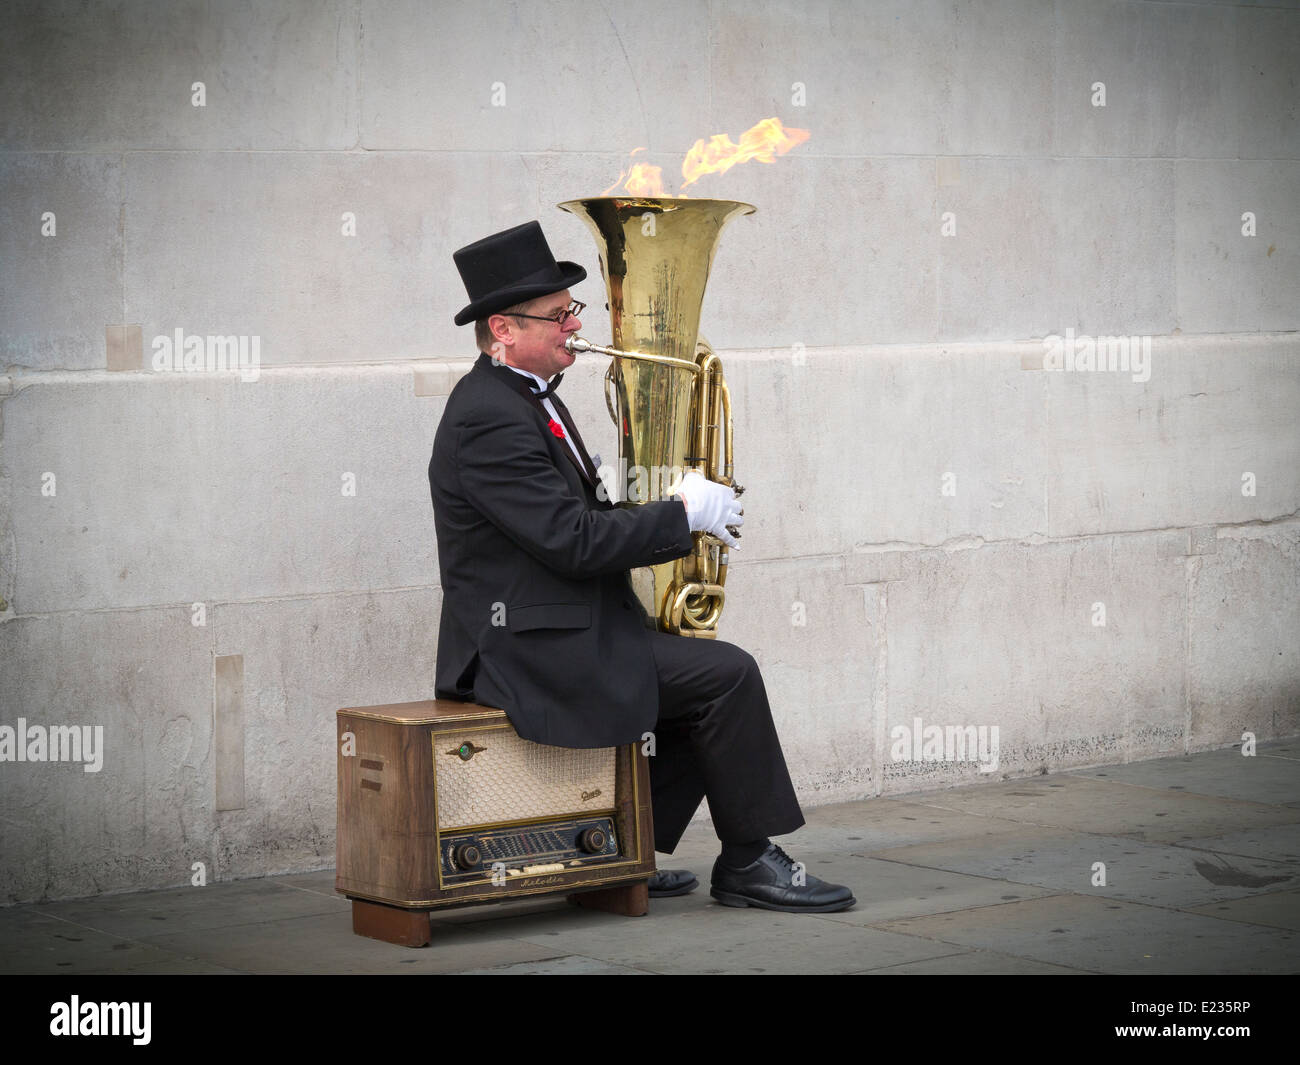 Musicien ambulant, Christopher Werkowicz jouant son flaming tuba assis sur une vieille radio contre un mur de pierre Londres Angleterre Banque D'Images